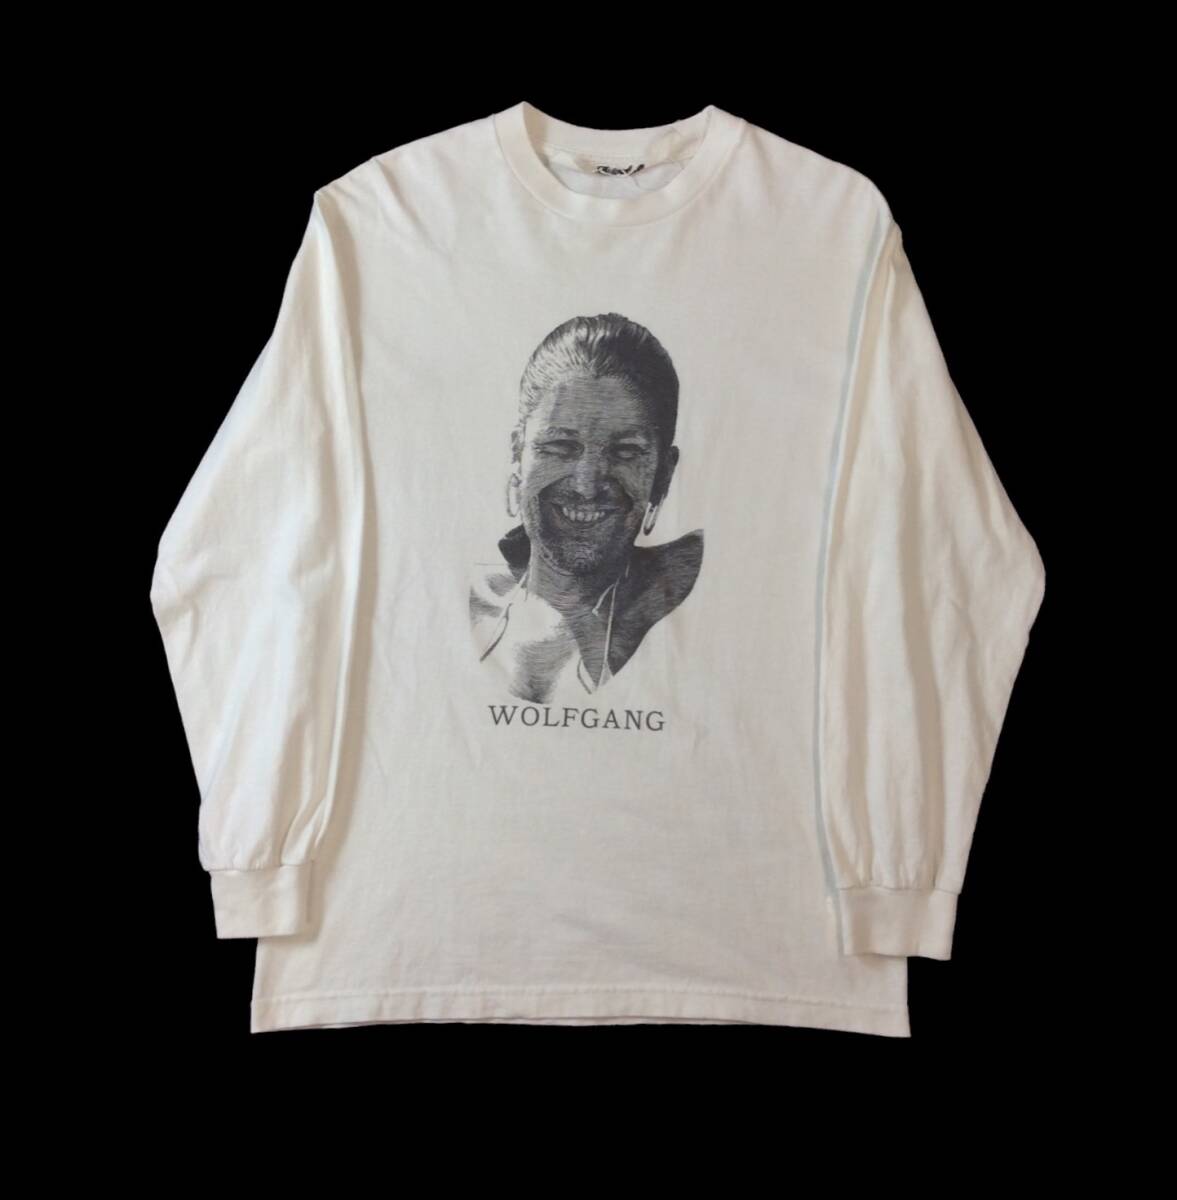 Midorikawa × TWONESS ミドリカワ トゥーネス 長袖Tシャツ WOLFGANG トップス カットソー ホワイト 白 M (ma)の画像1